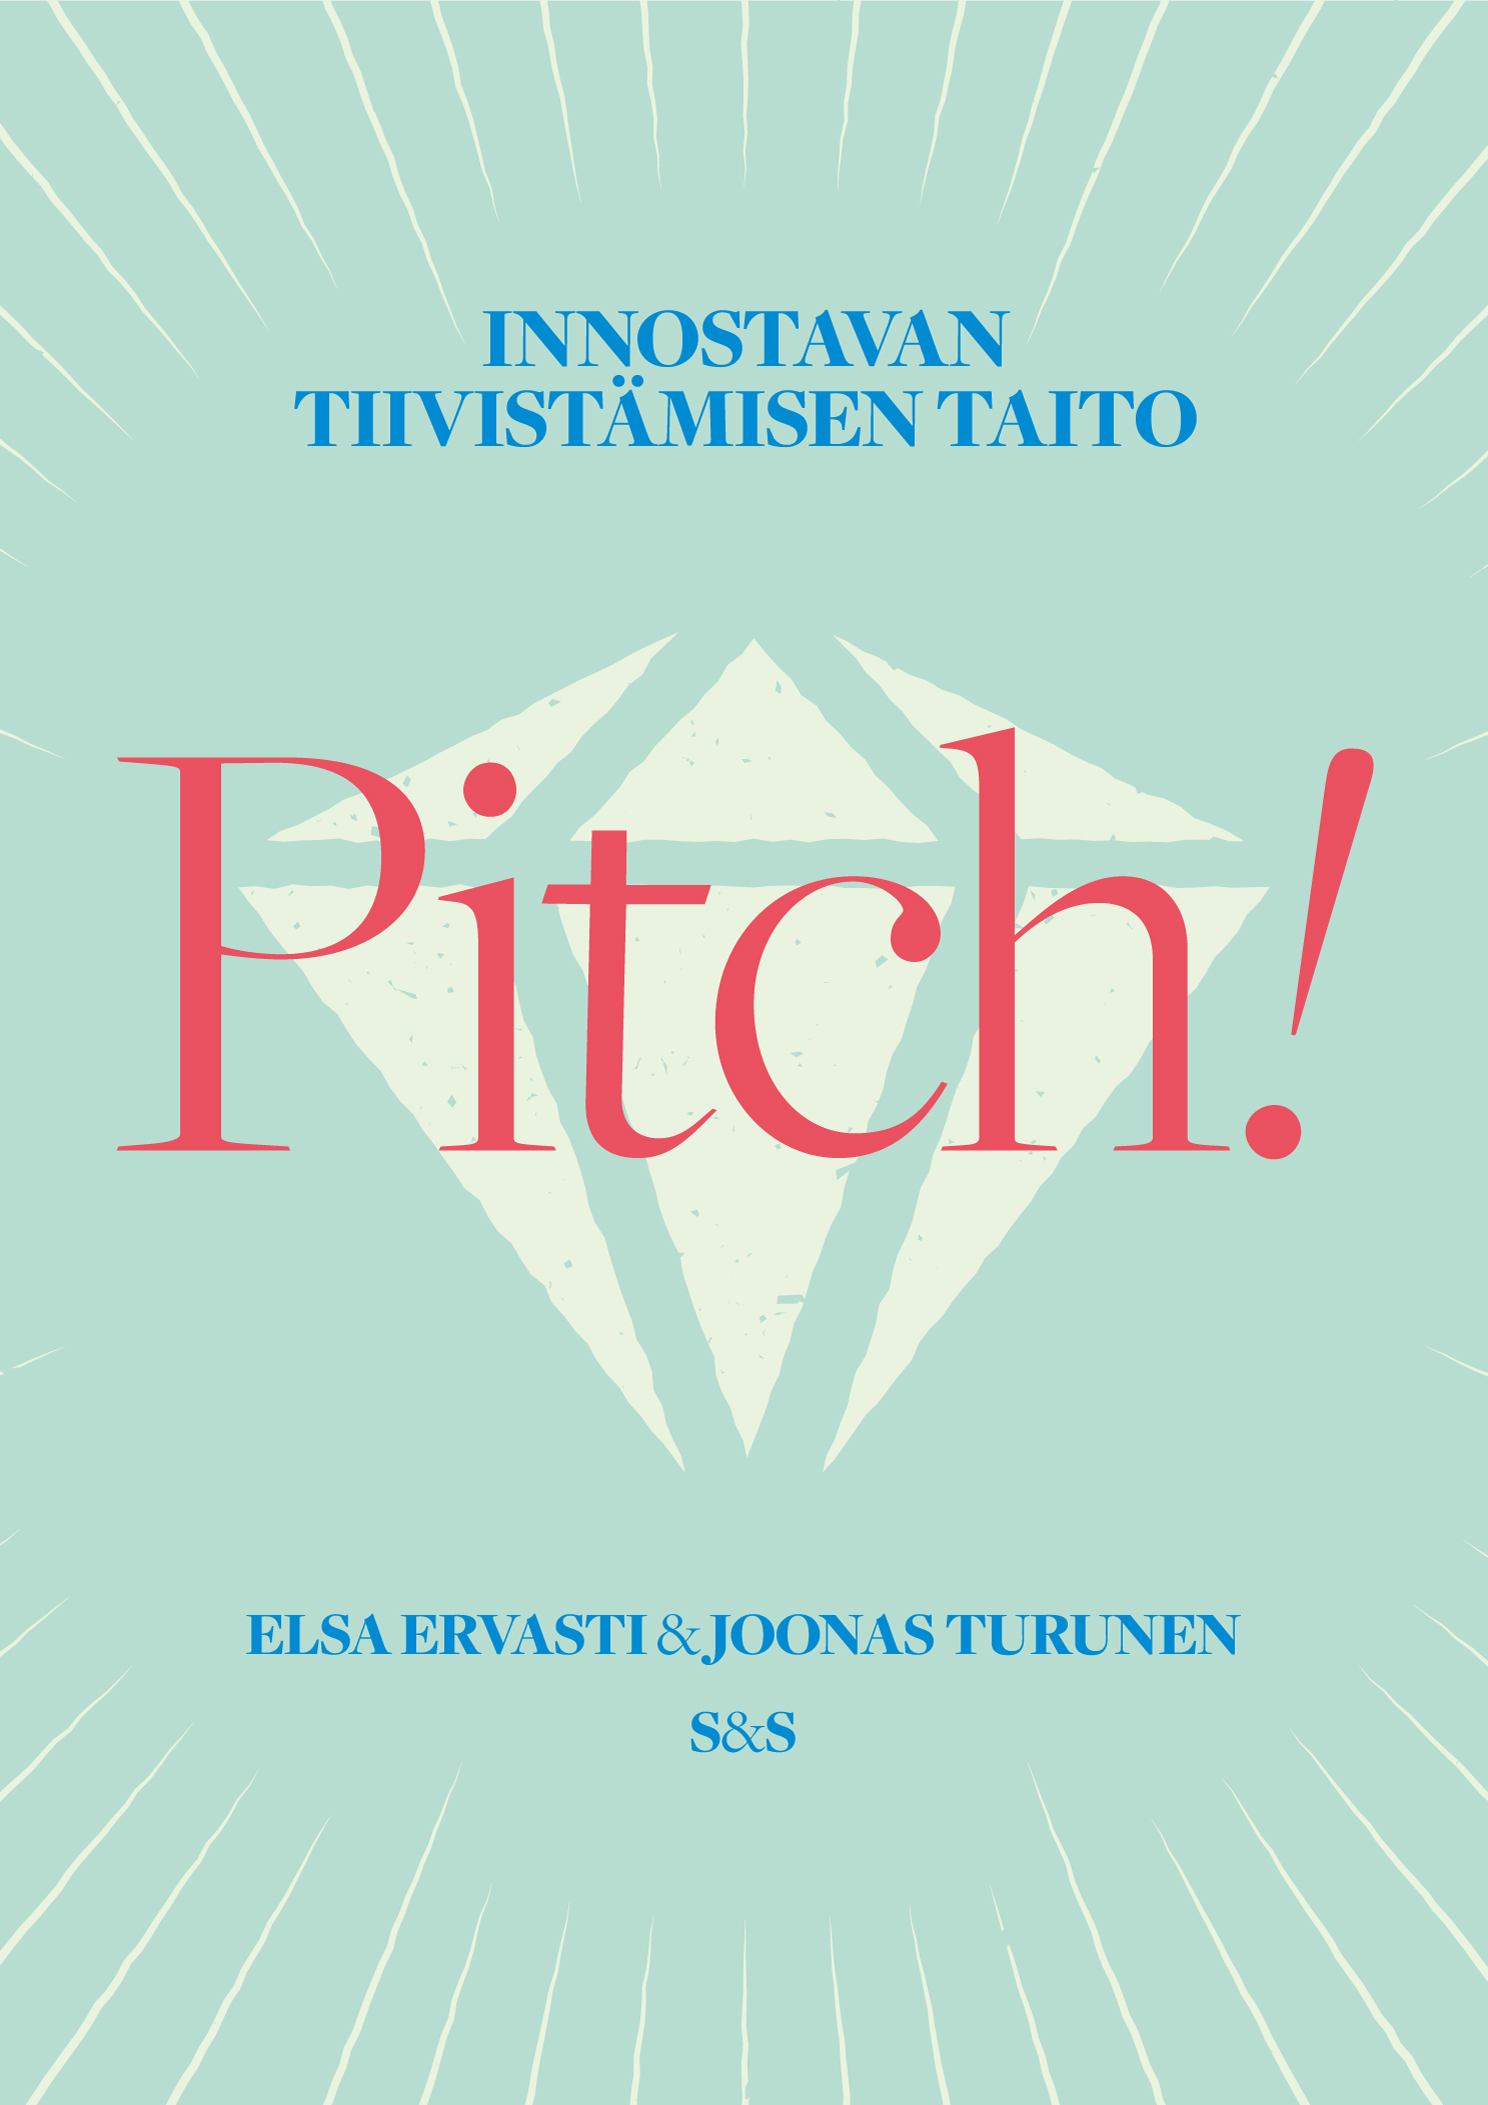 Ervasti, Elsa - Pitch!: Innostavan tiivistämisen taito, ebook